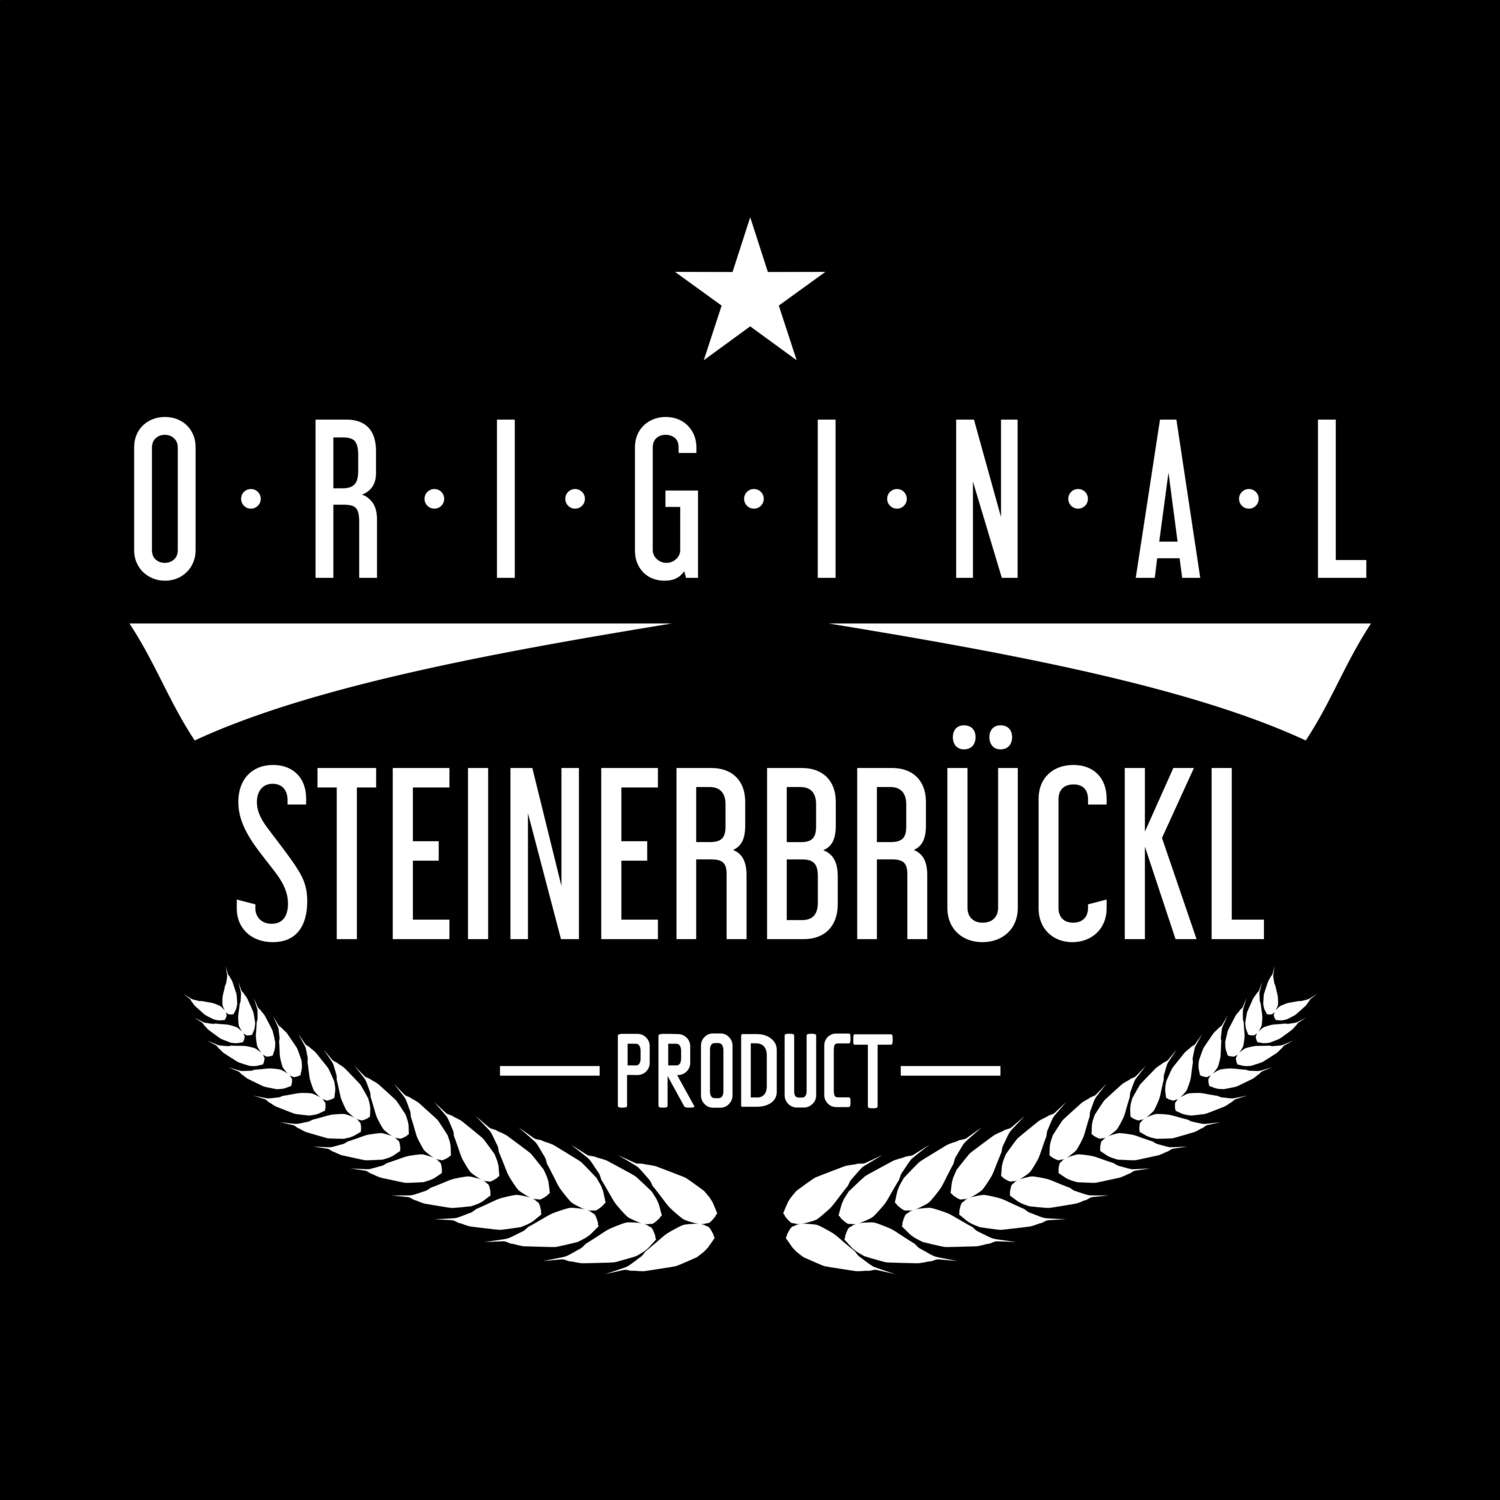 Steinerbrückl T-Shirt »Original Product«